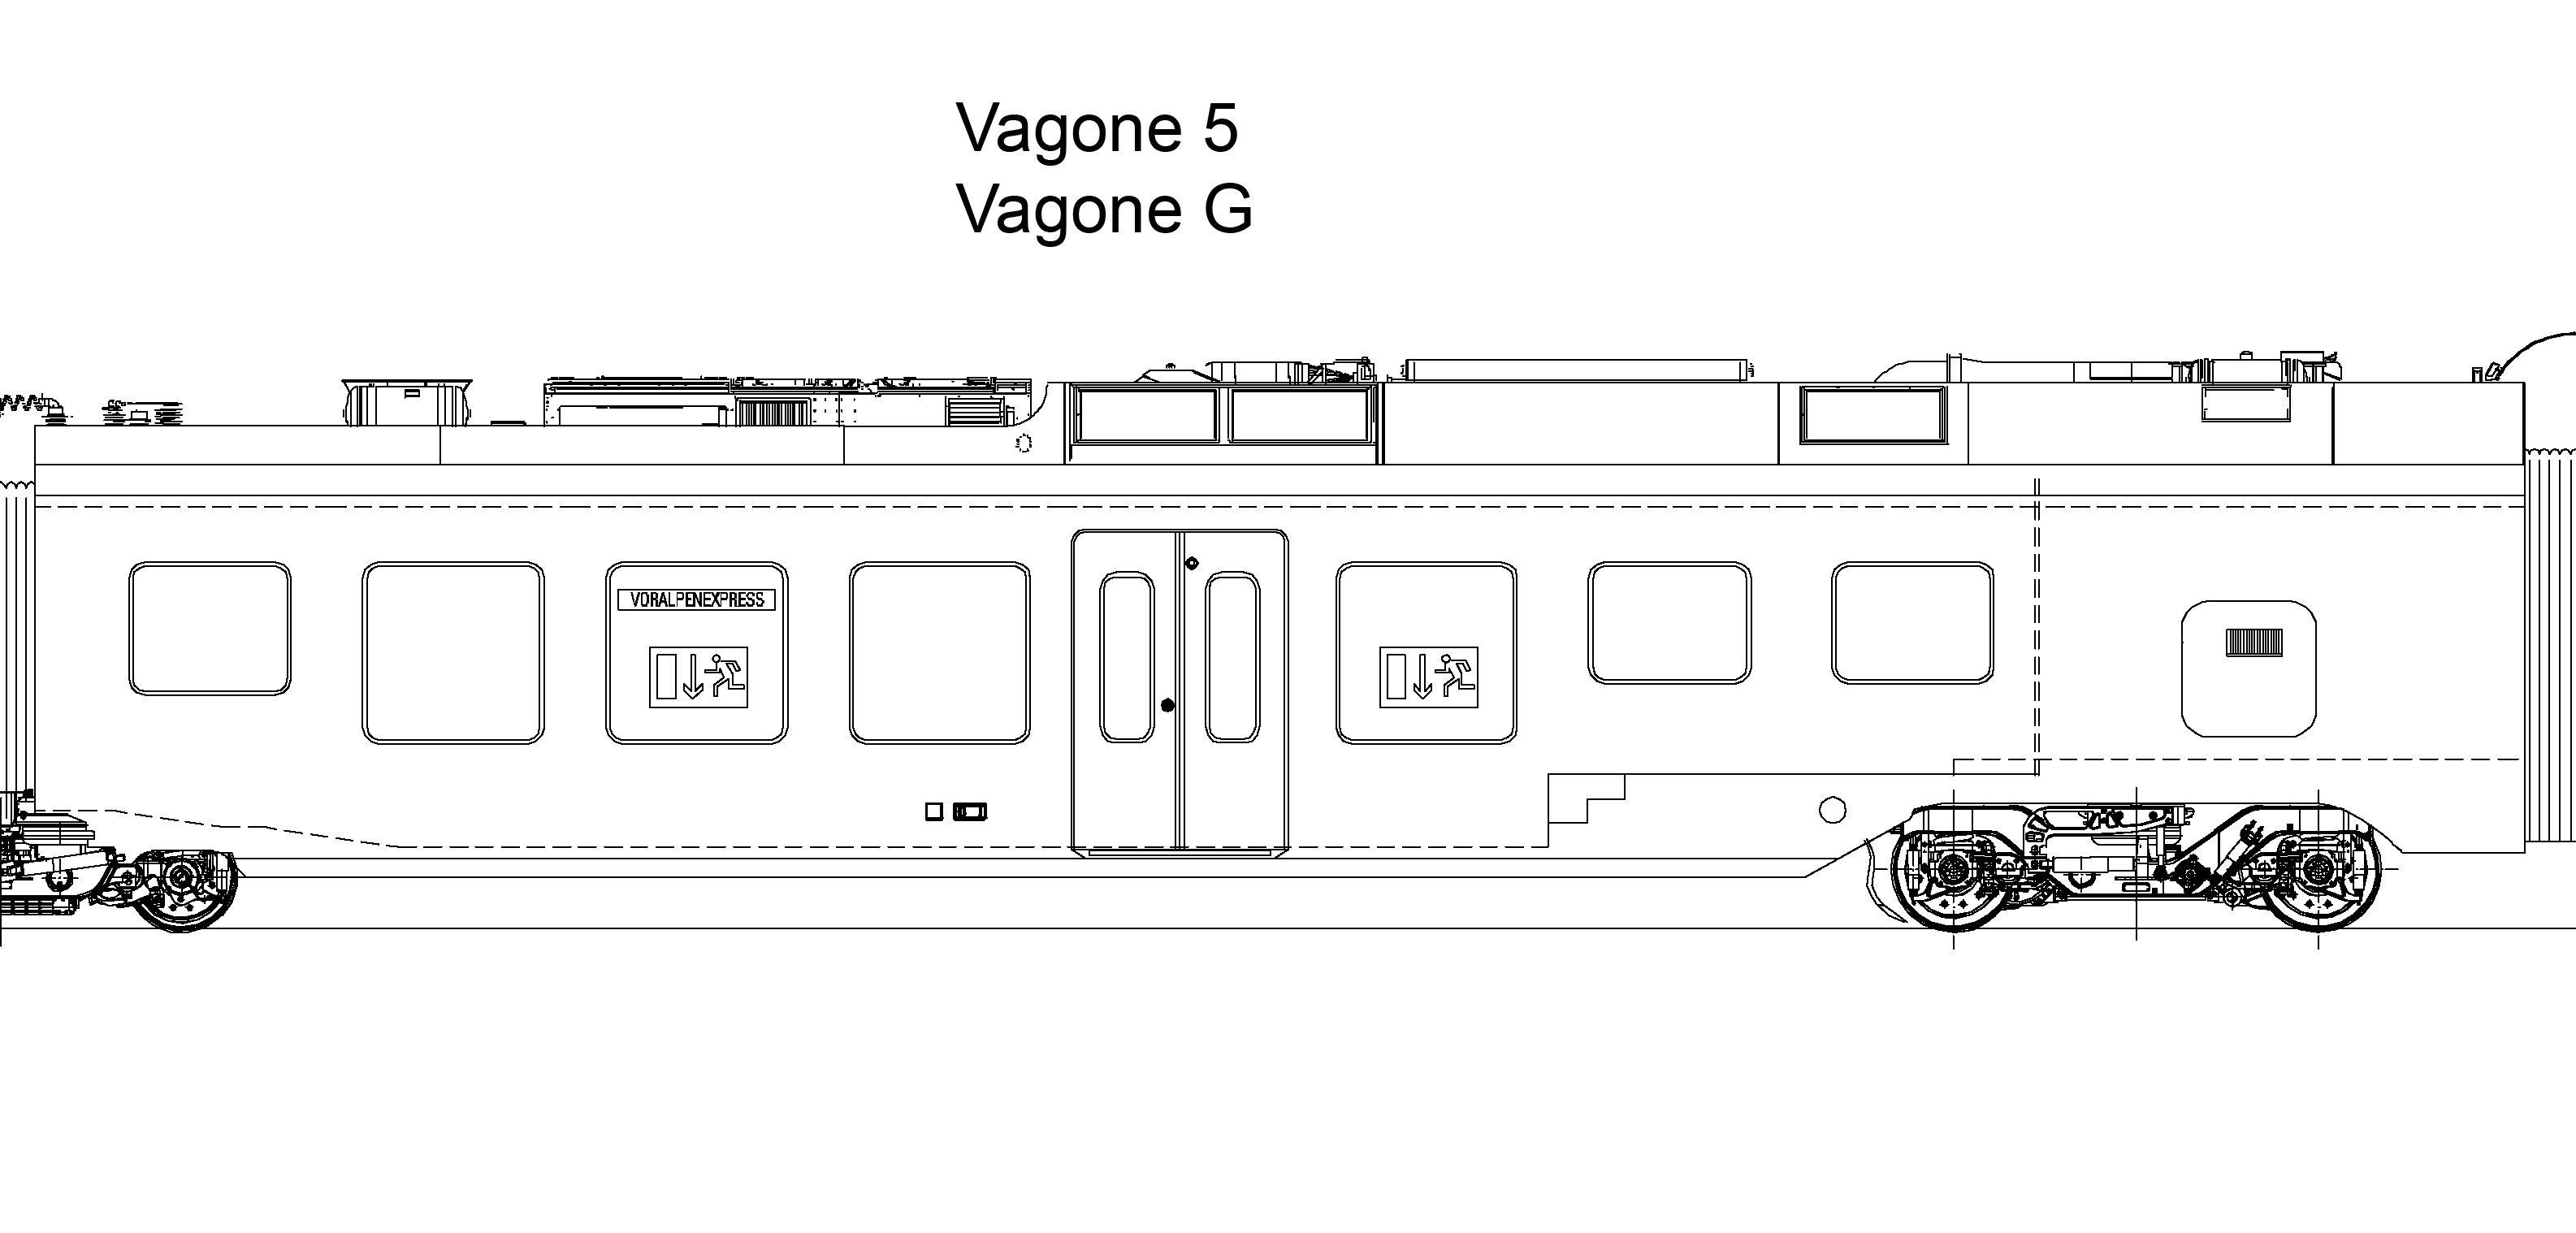 Traverso, Vagone 5, Vagone G